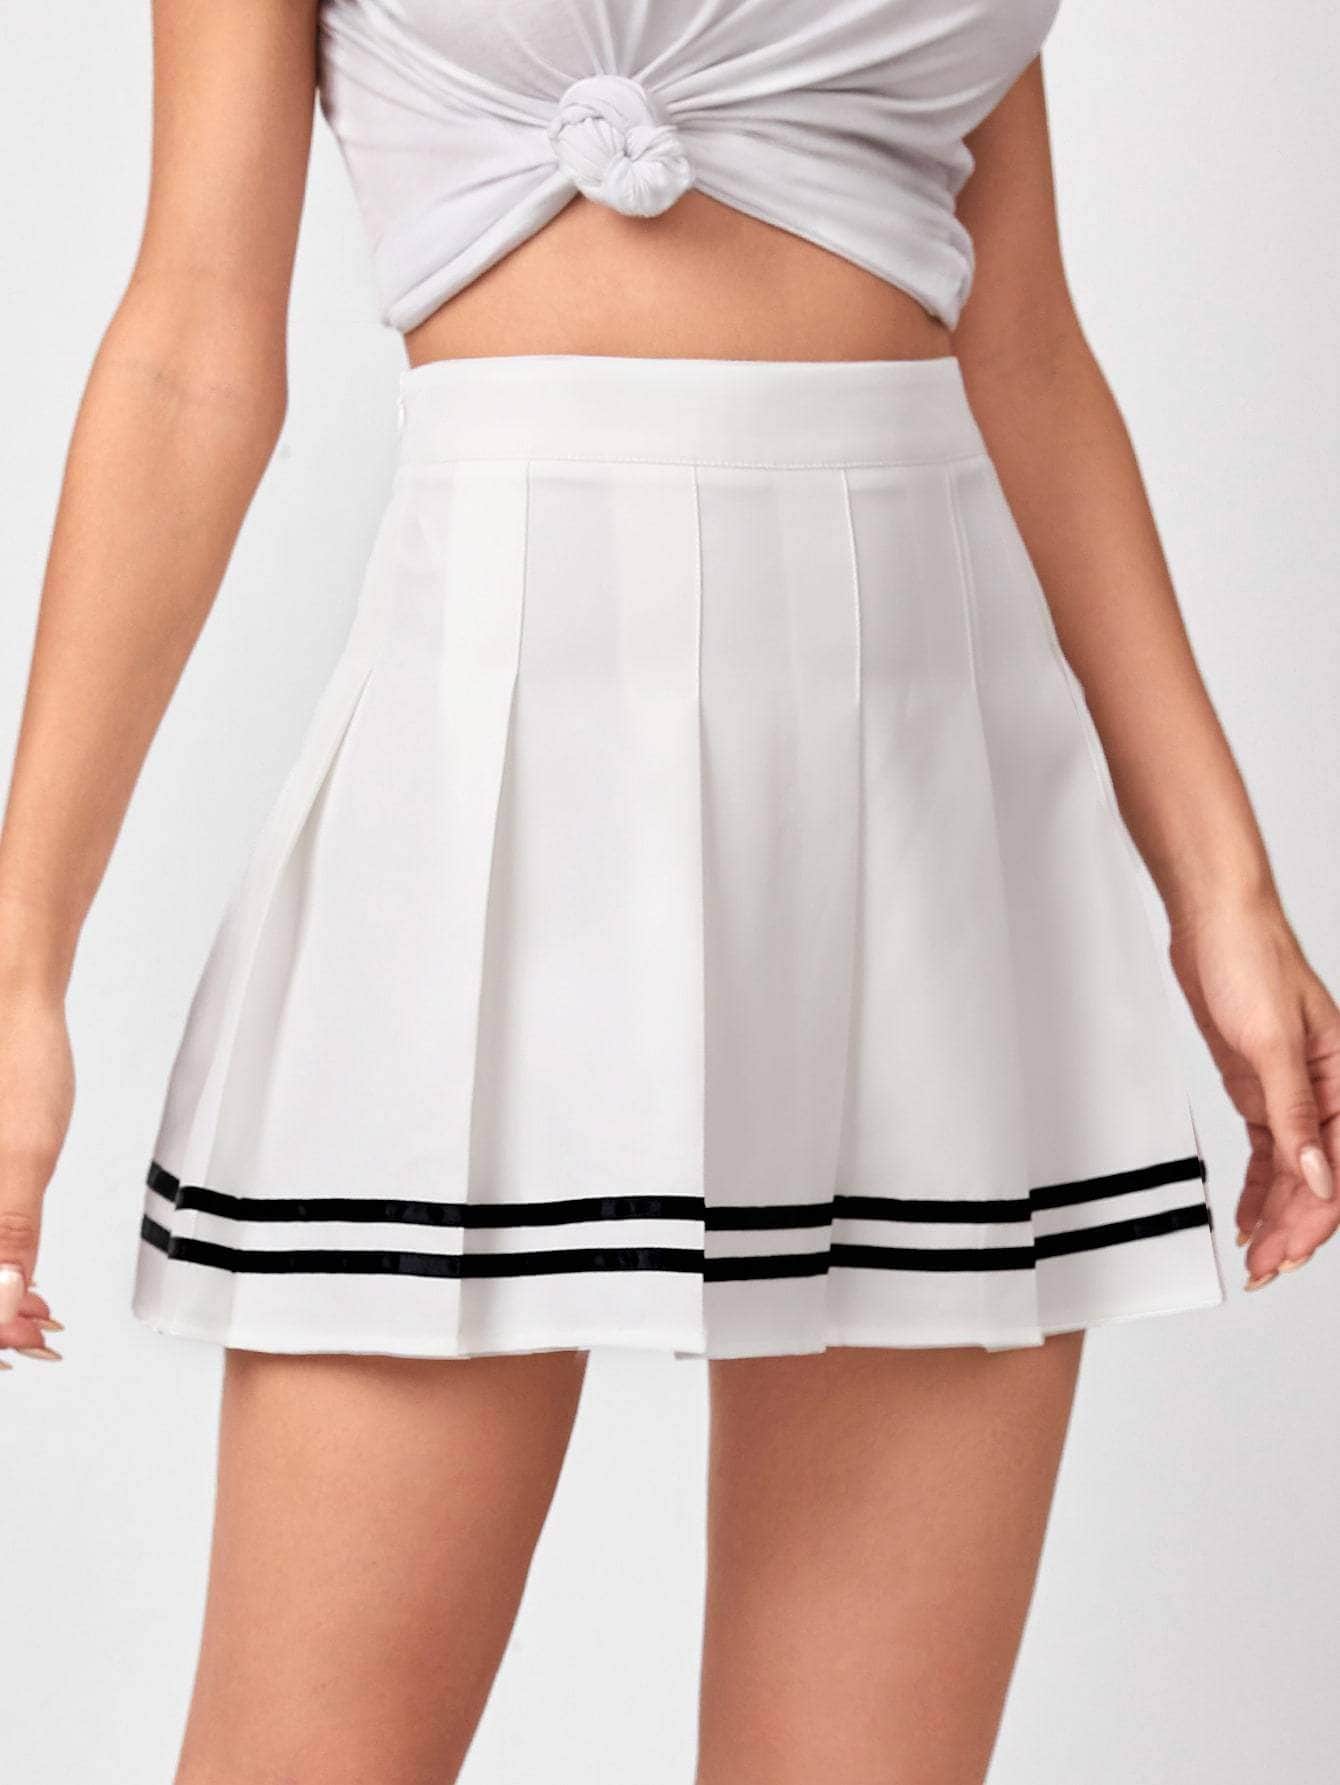 Blanco / L Muybonita falda con fruncido con cinta de rayas con cremallera lateral